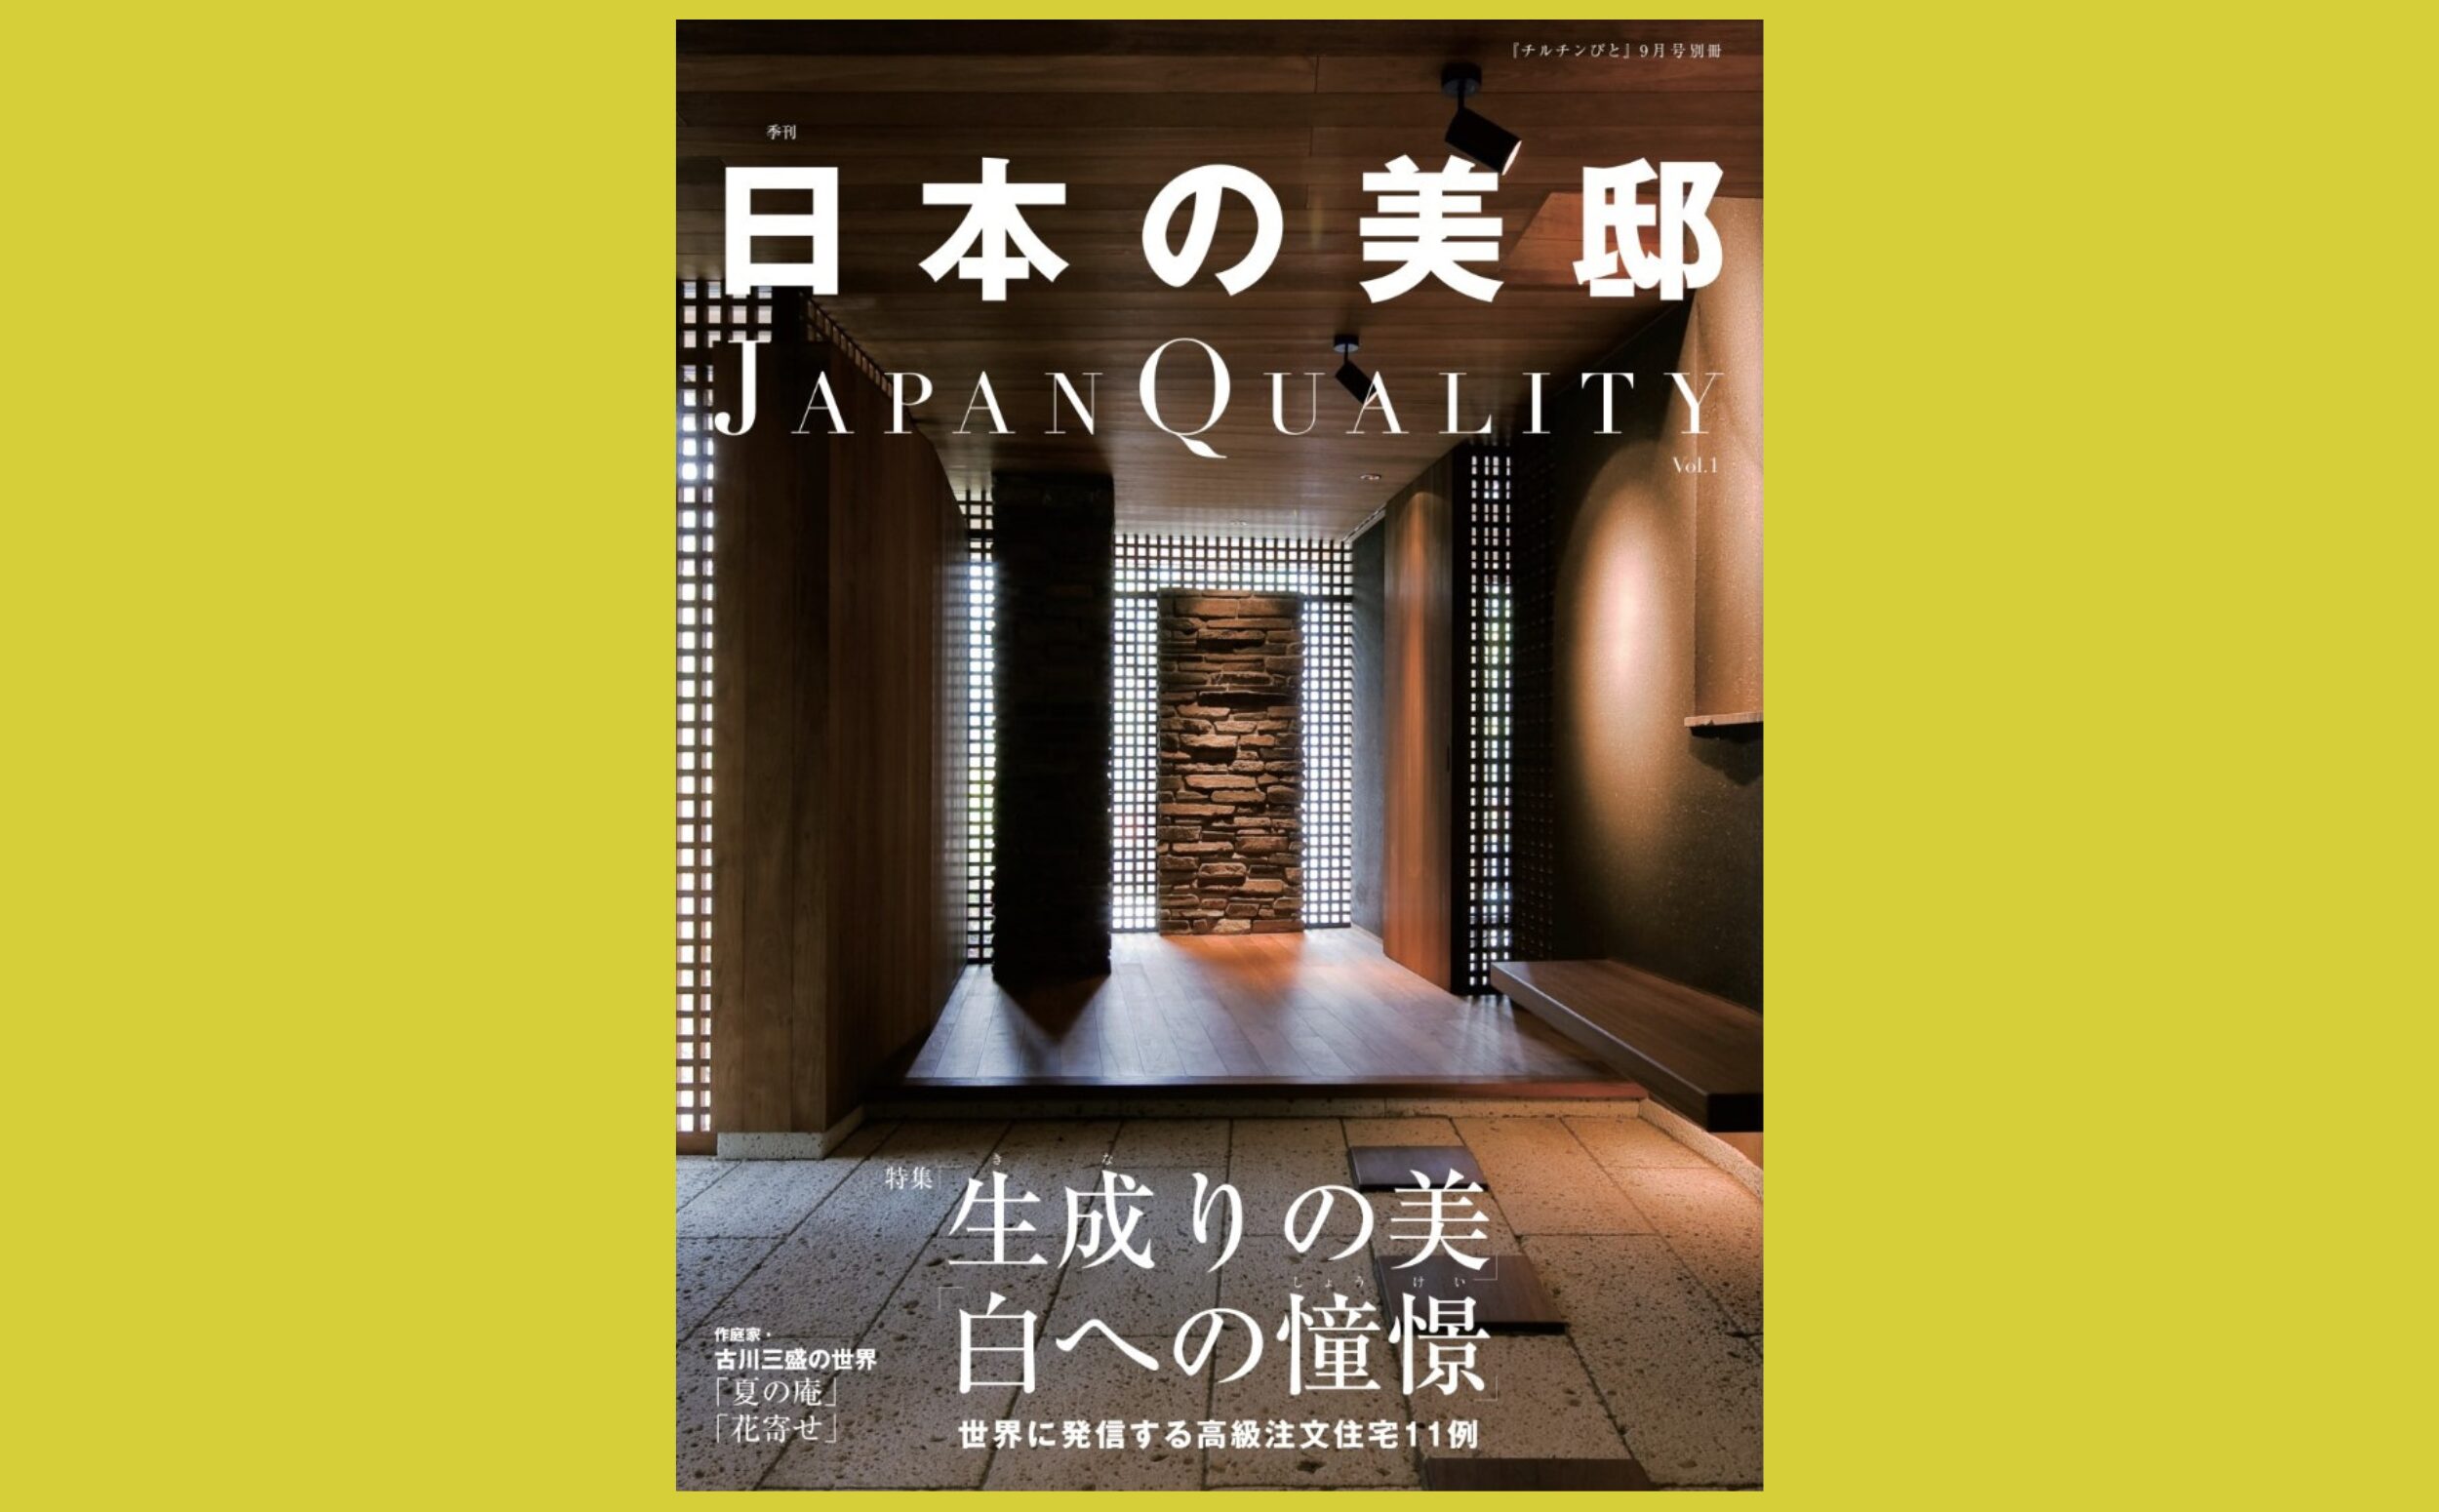 これからの“美邸”鍵となるのは植栽や自然『日本の美邸 JAPAN QUALITY』チルチンびと2018年9月号別冊